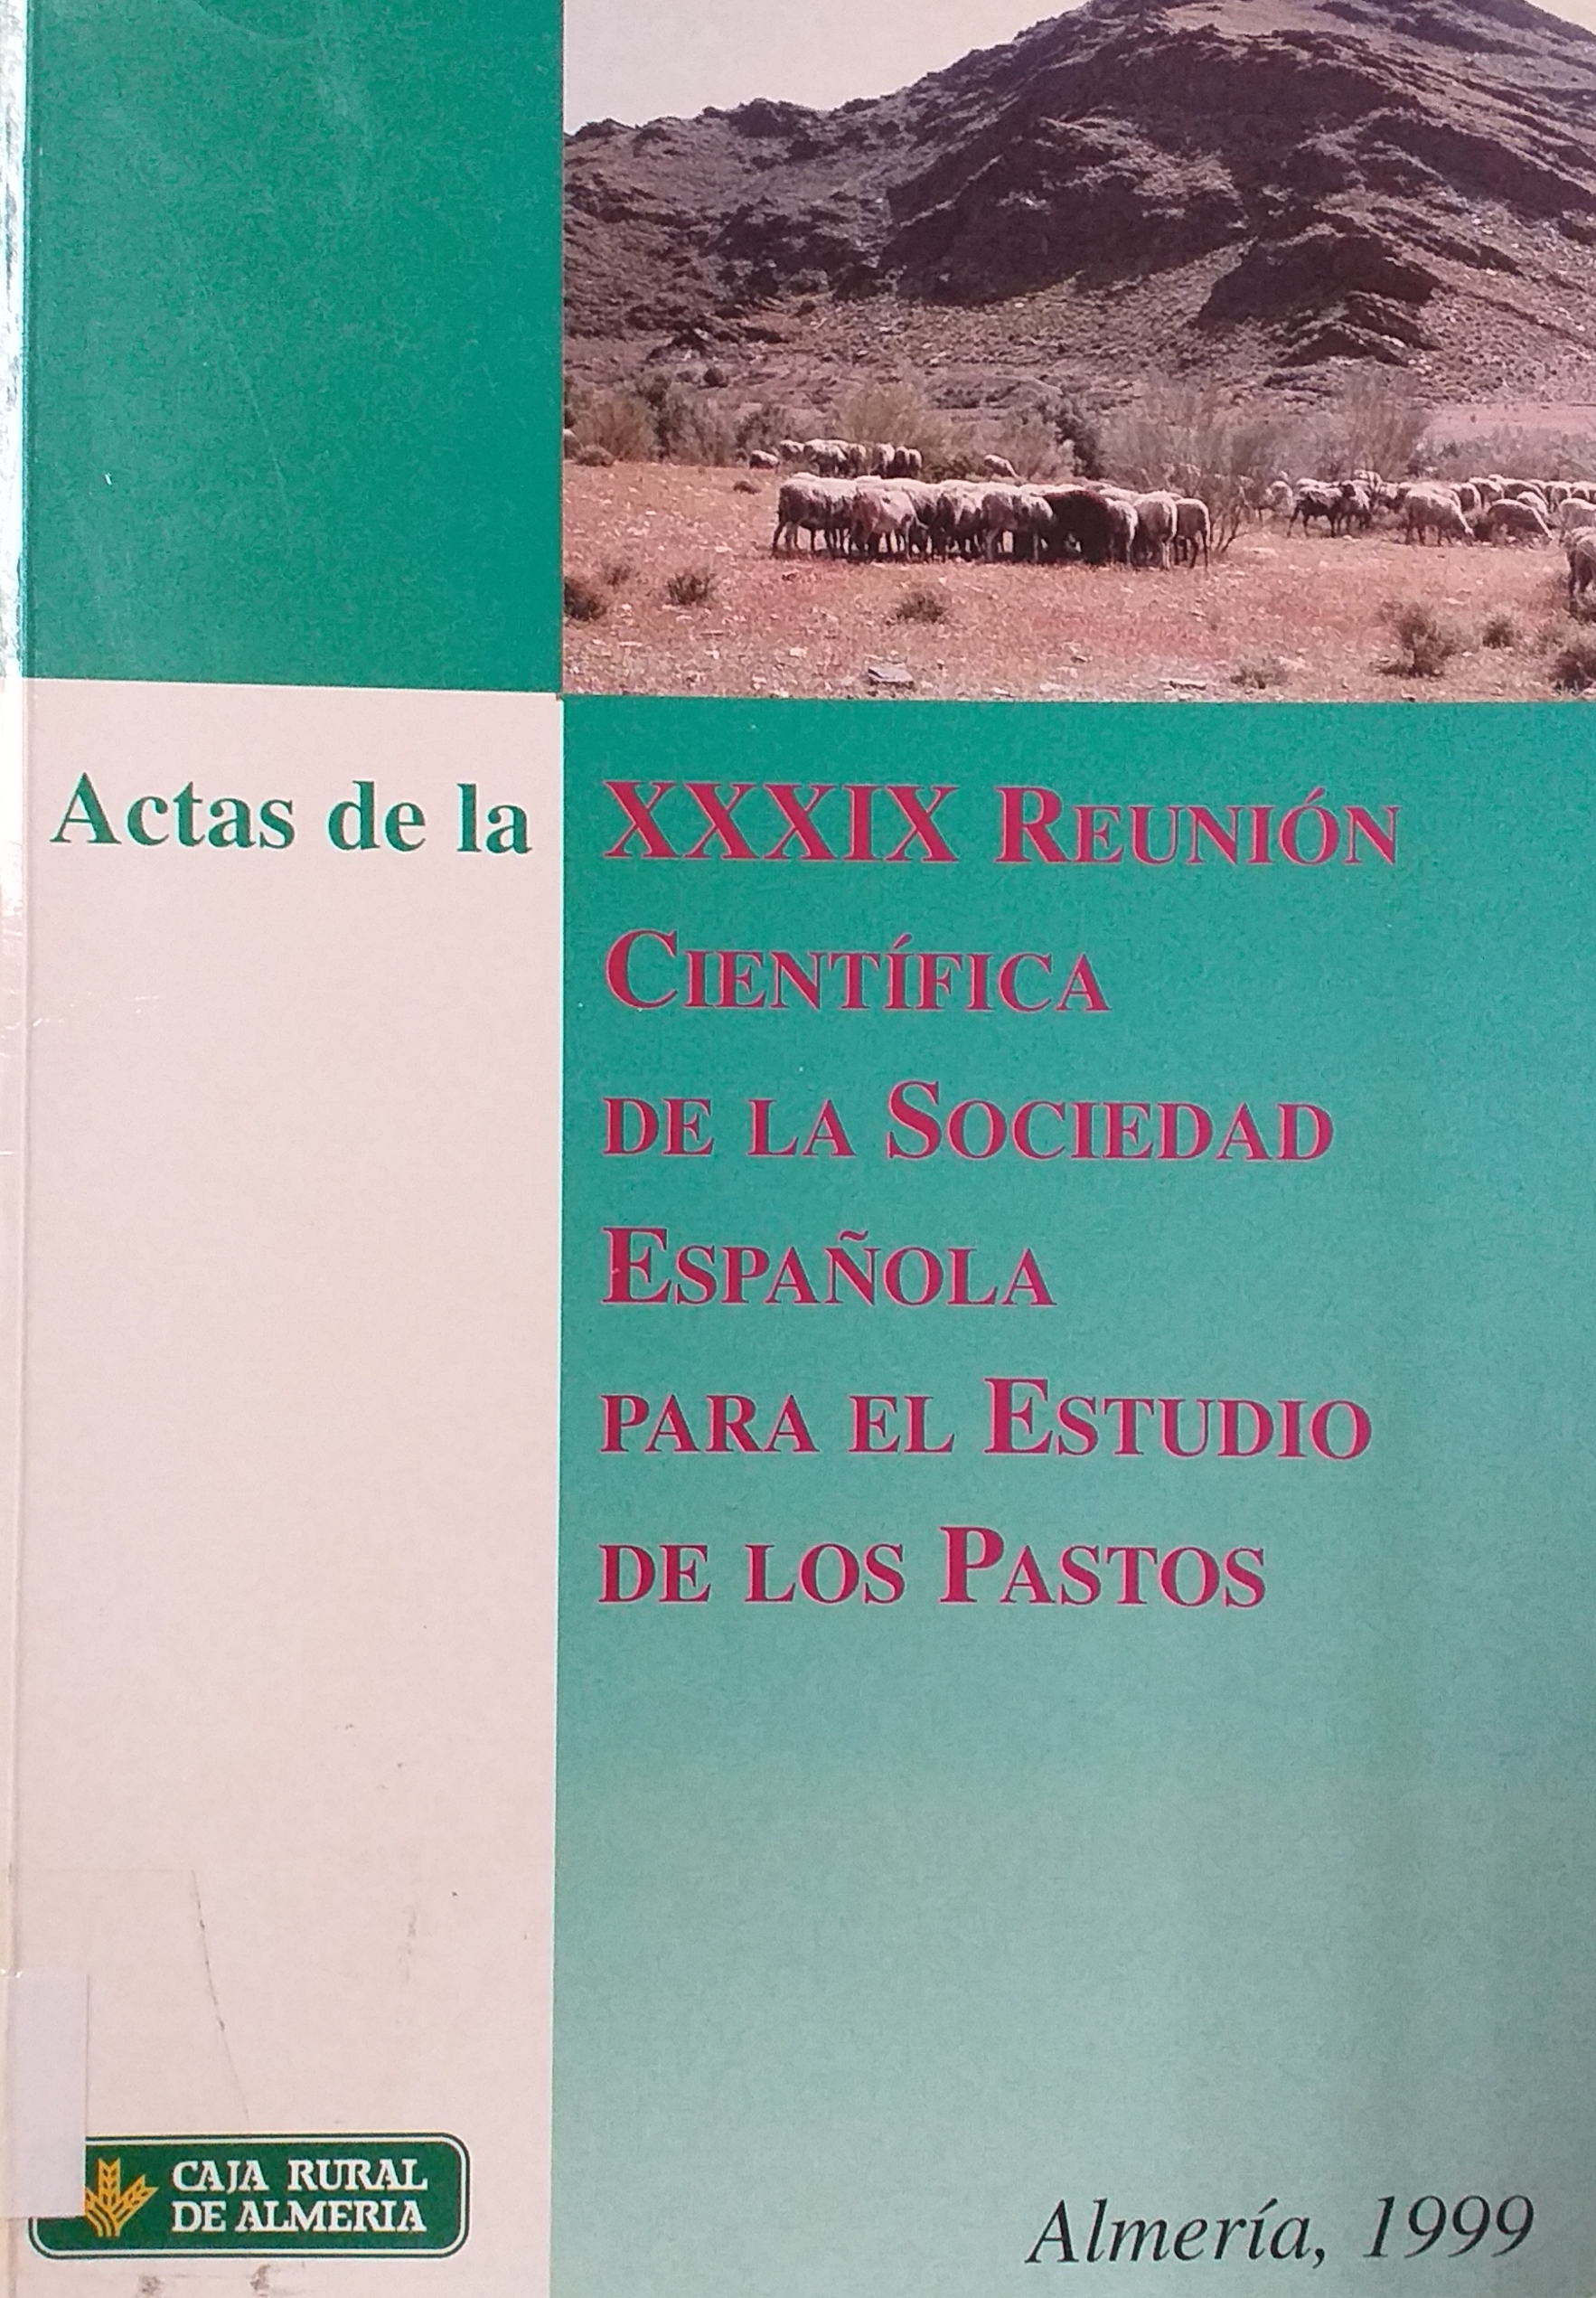 Imagen de portada del libro Actas de la XXXIX Reunión Científica de la Sociedad Española para el Estudio de los Pastos